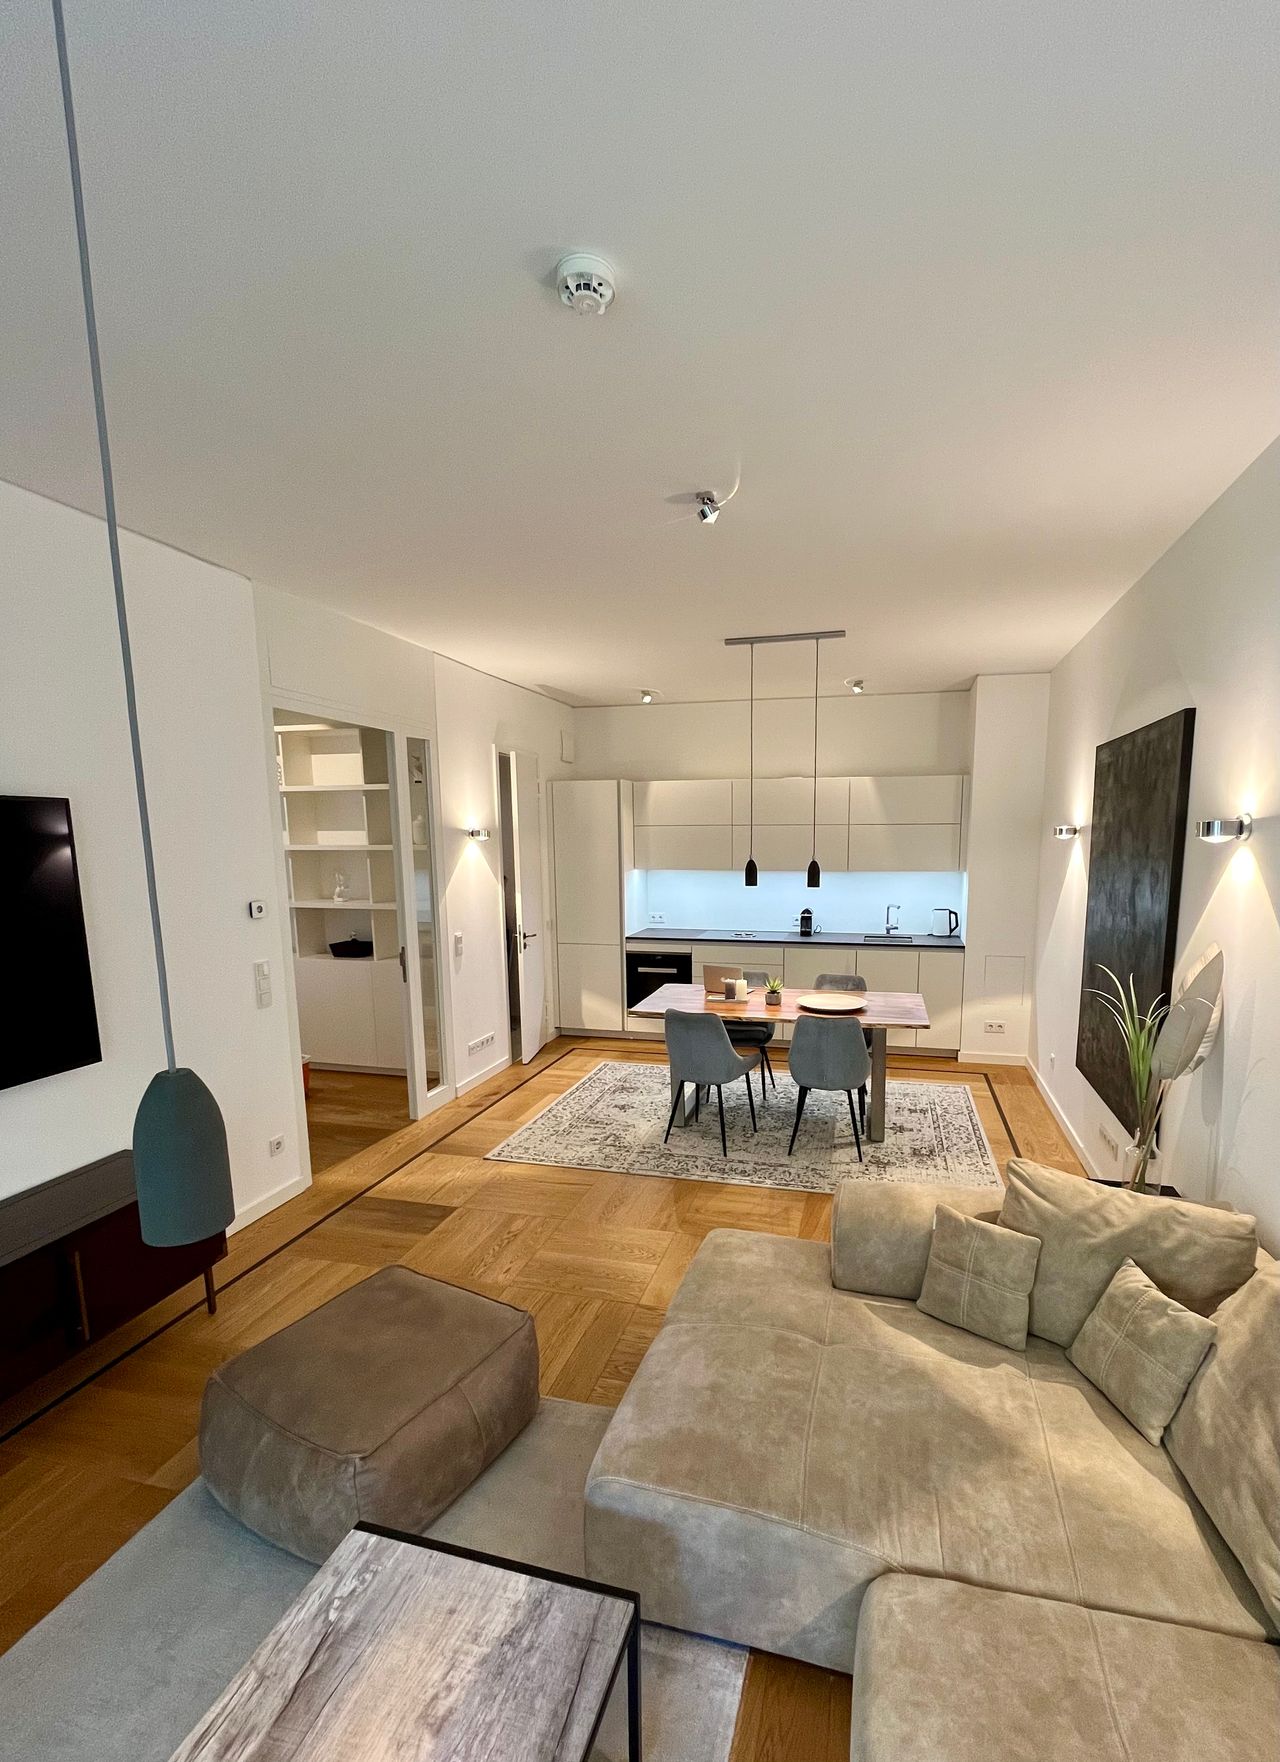 Luxury 1 bedroom apartment in best address of Berlin Mitte